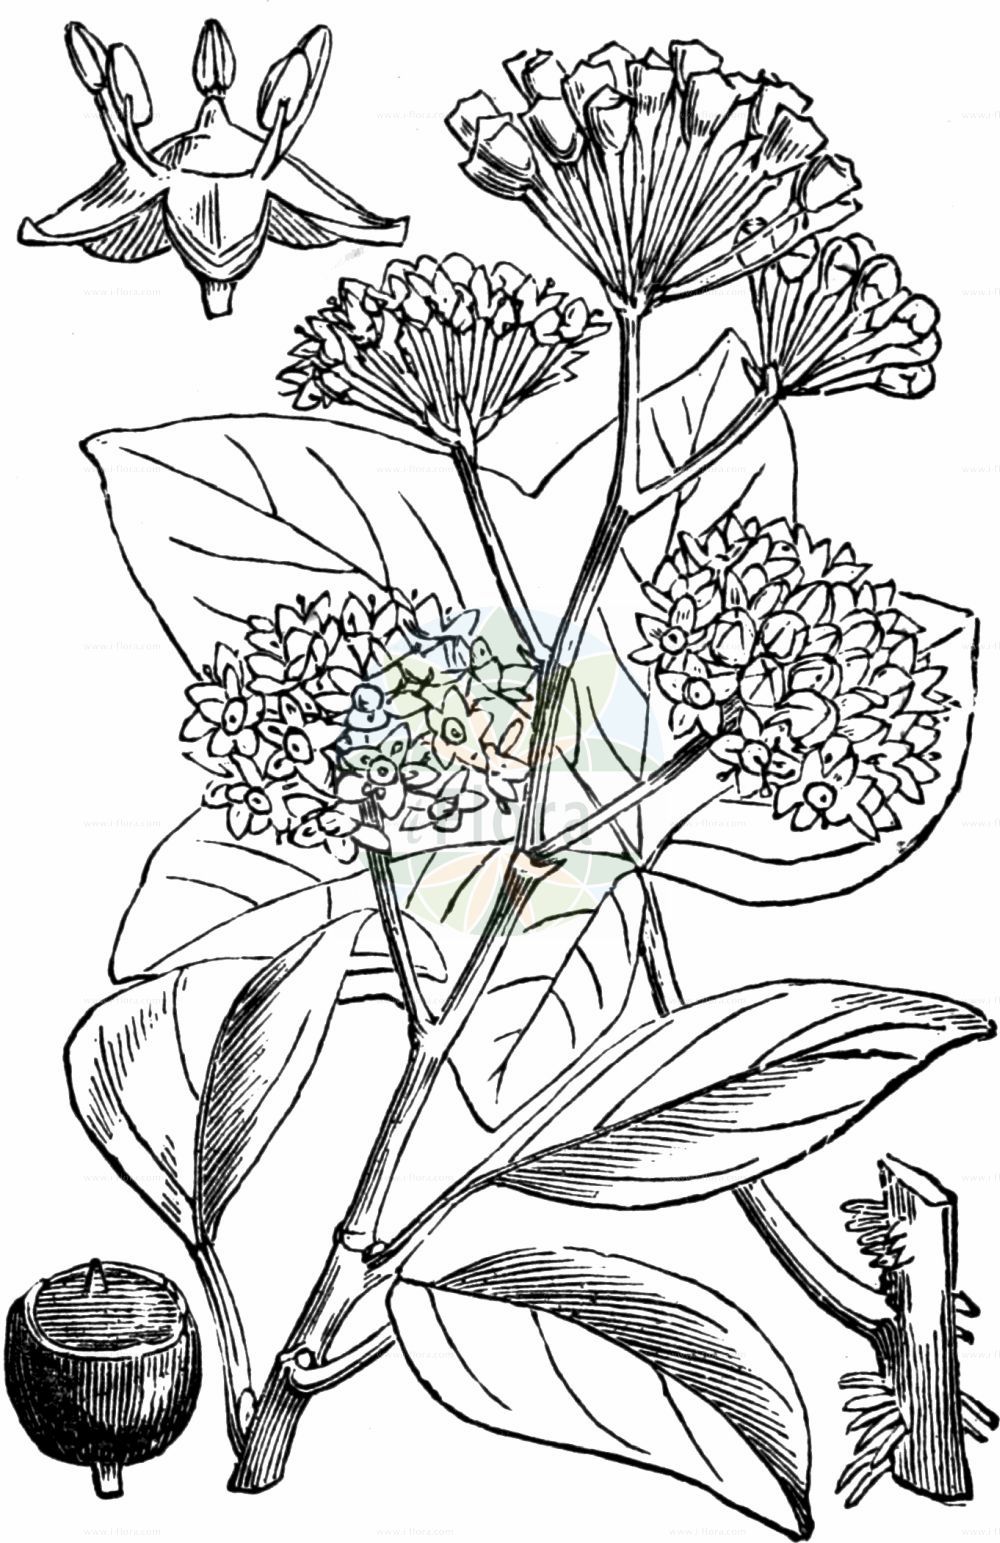 Historische Abbildung von Hedera helix (Gewöhnlicher Efeu - Ivy). Das Bild zeigt Blatt, Bluete, Frucht und Same. ---- Historical Drawing of Hedera helix (Gewöhnlicher Efeu - Ivy). The image is showing leaf, flower, fruit and seed.(Hedera helix,Gewöhnlicher Efeu,Ivy,Hedera helix,Hedera poetica,Gewoehnlicher Efeu,Efeu,Ivy,Common Ivy,English Ivy,Hedera,Efeu,Ivy,Araliaceae,Efeugewächse,Ginseng family,Blatt,Bluete,Frucht,Same,leaf,flower,fruit,seed,Fitch et al. (1880))